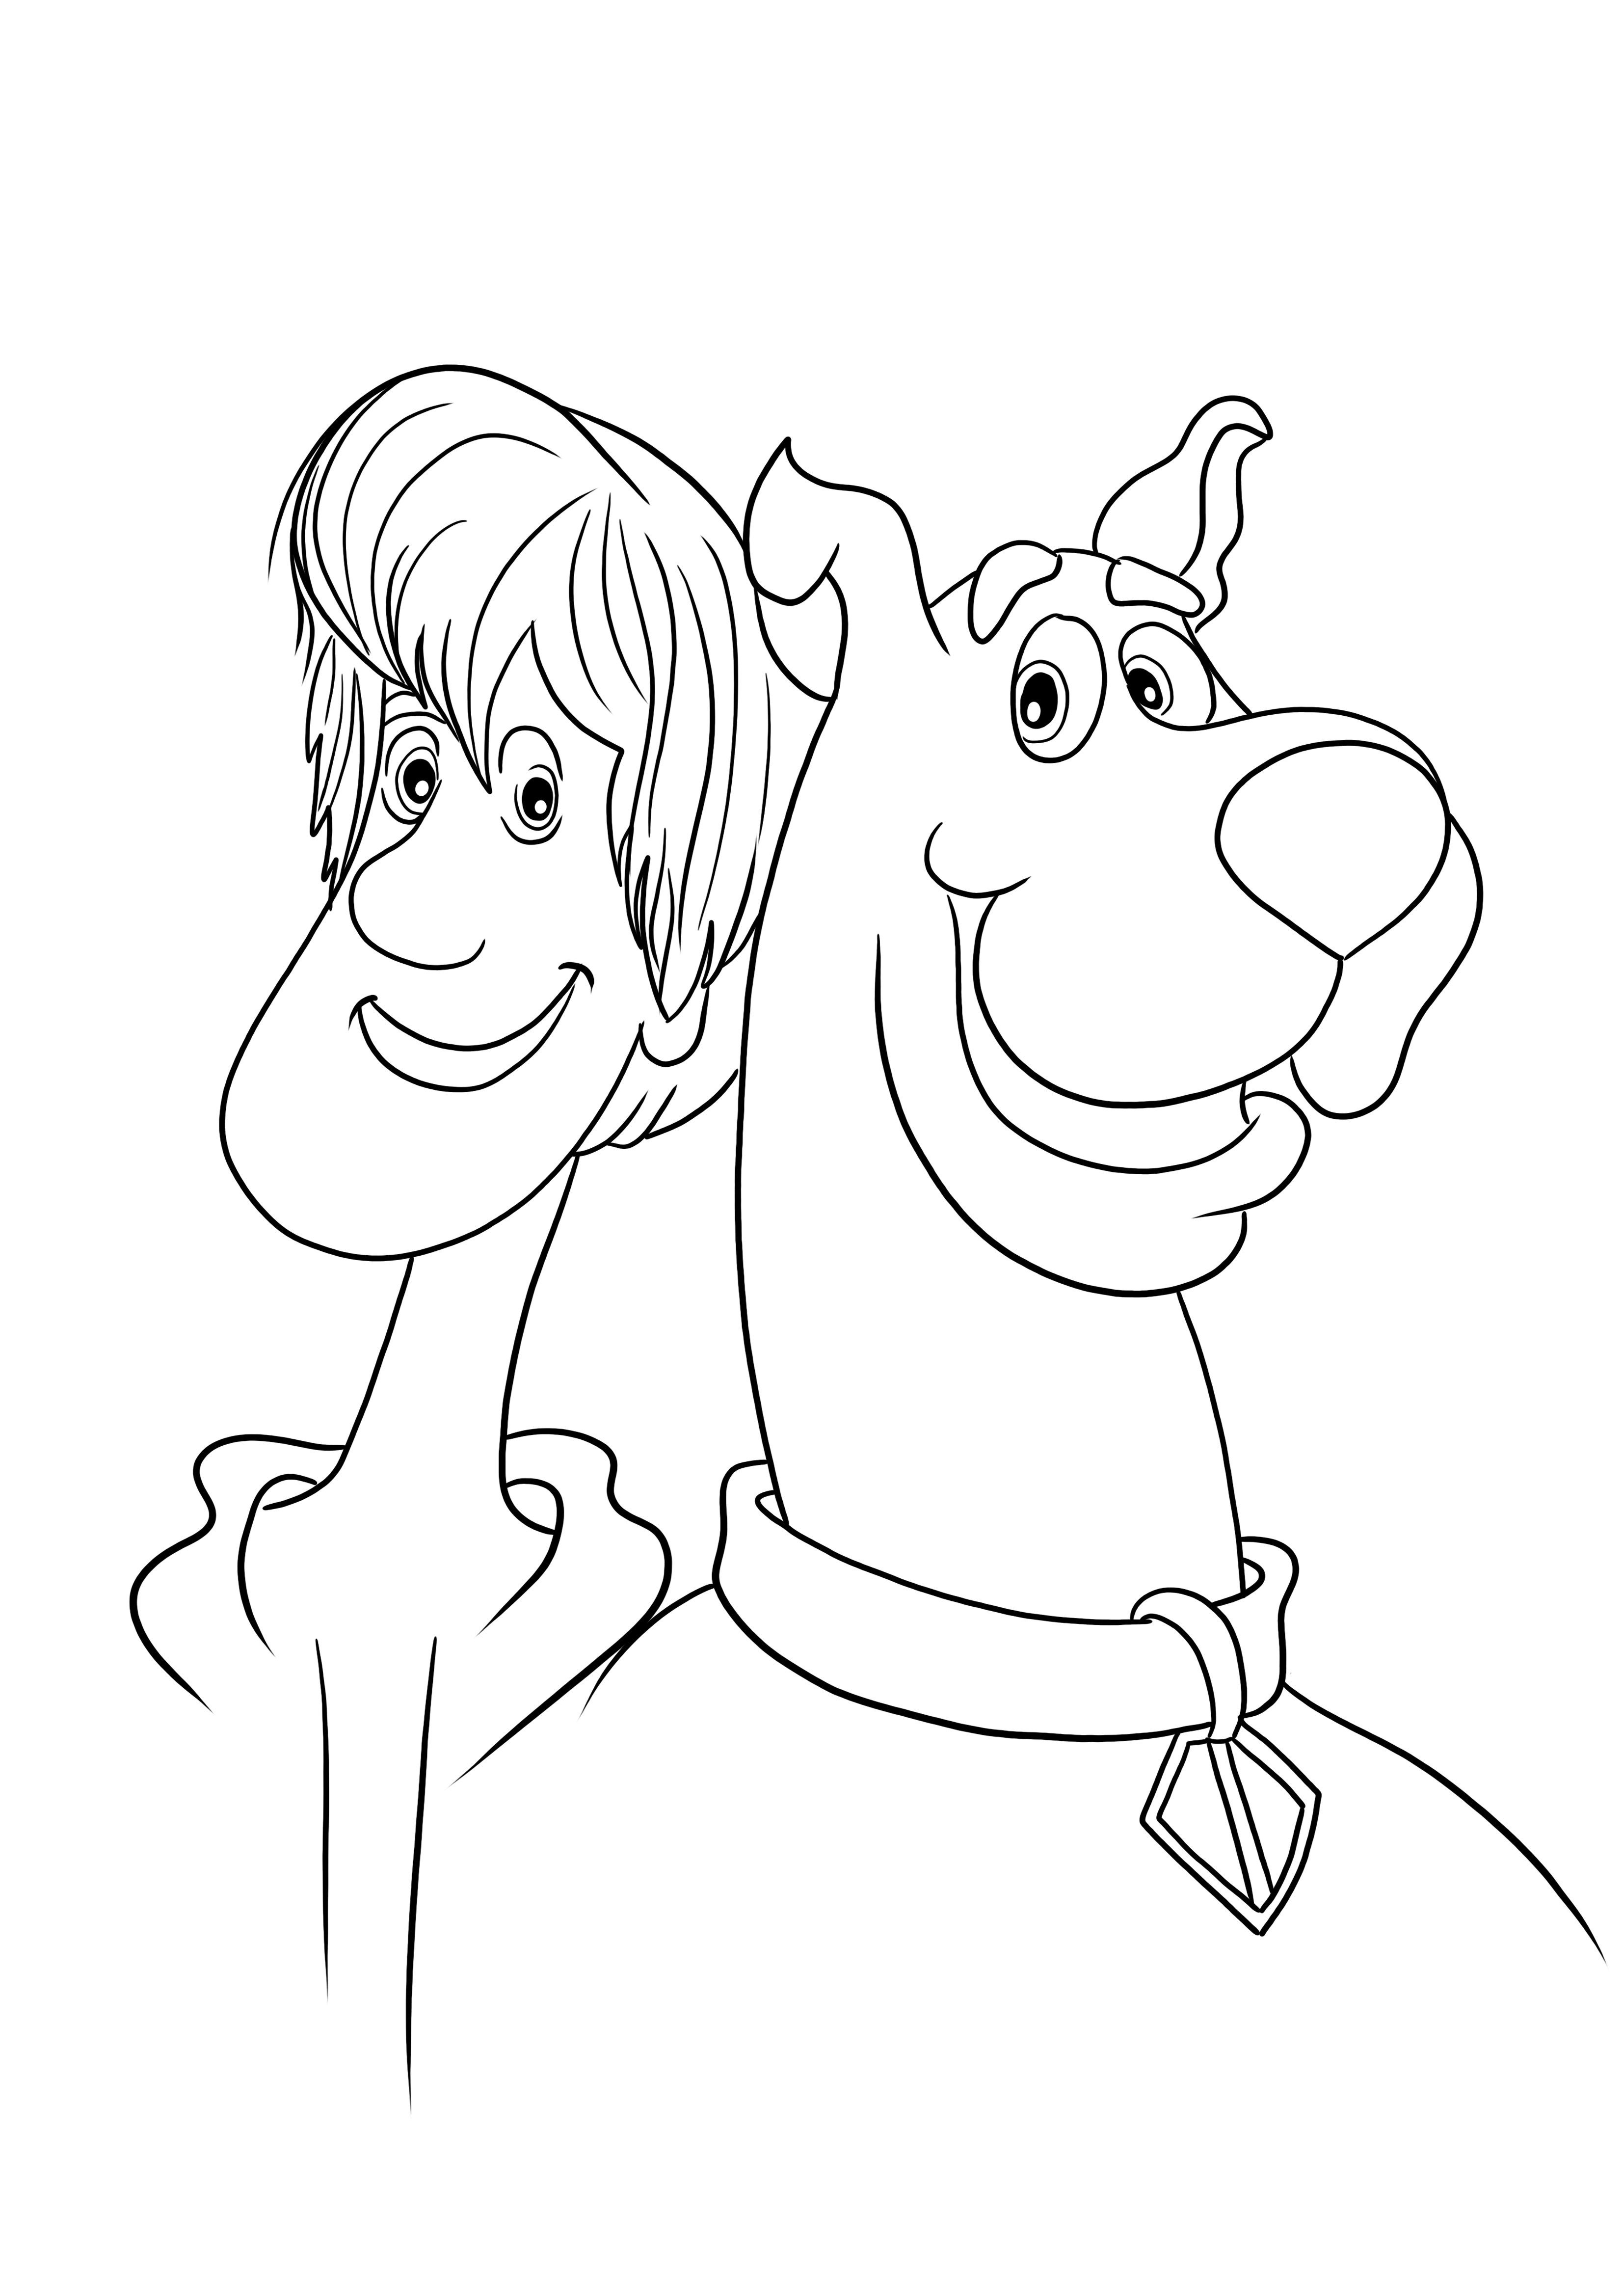 Lucu Shaggy dan temannya Scooby mudah mewarnai dan mencetak halaman untuk anak-anak